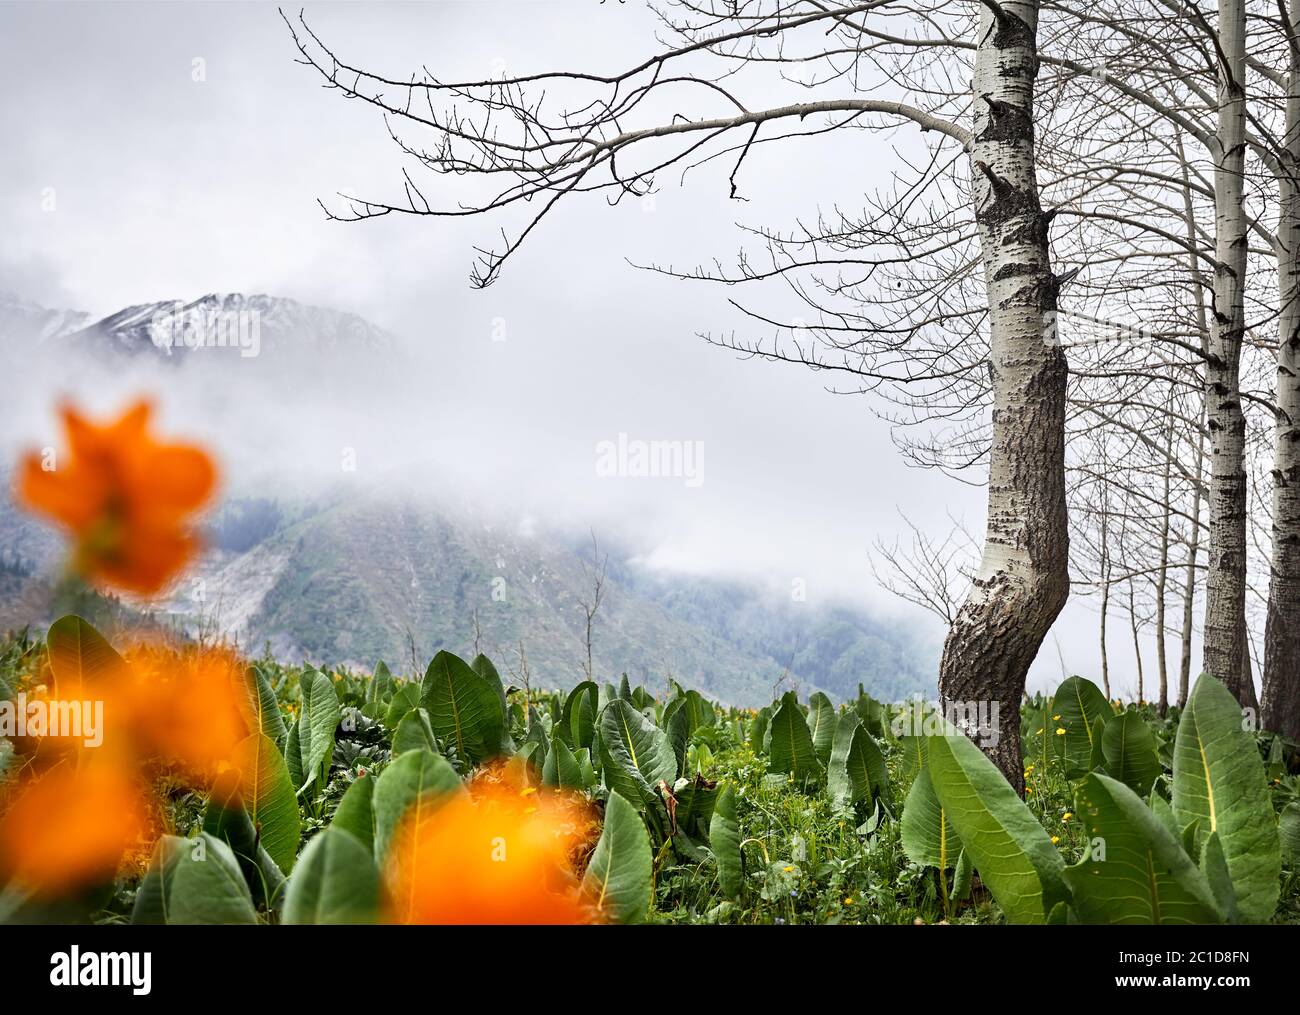 Magnifique paysage de la forêt de printemps contre les montagnes brumeuses avec neige. Concept de randonnée et de plein air Banque D'Images